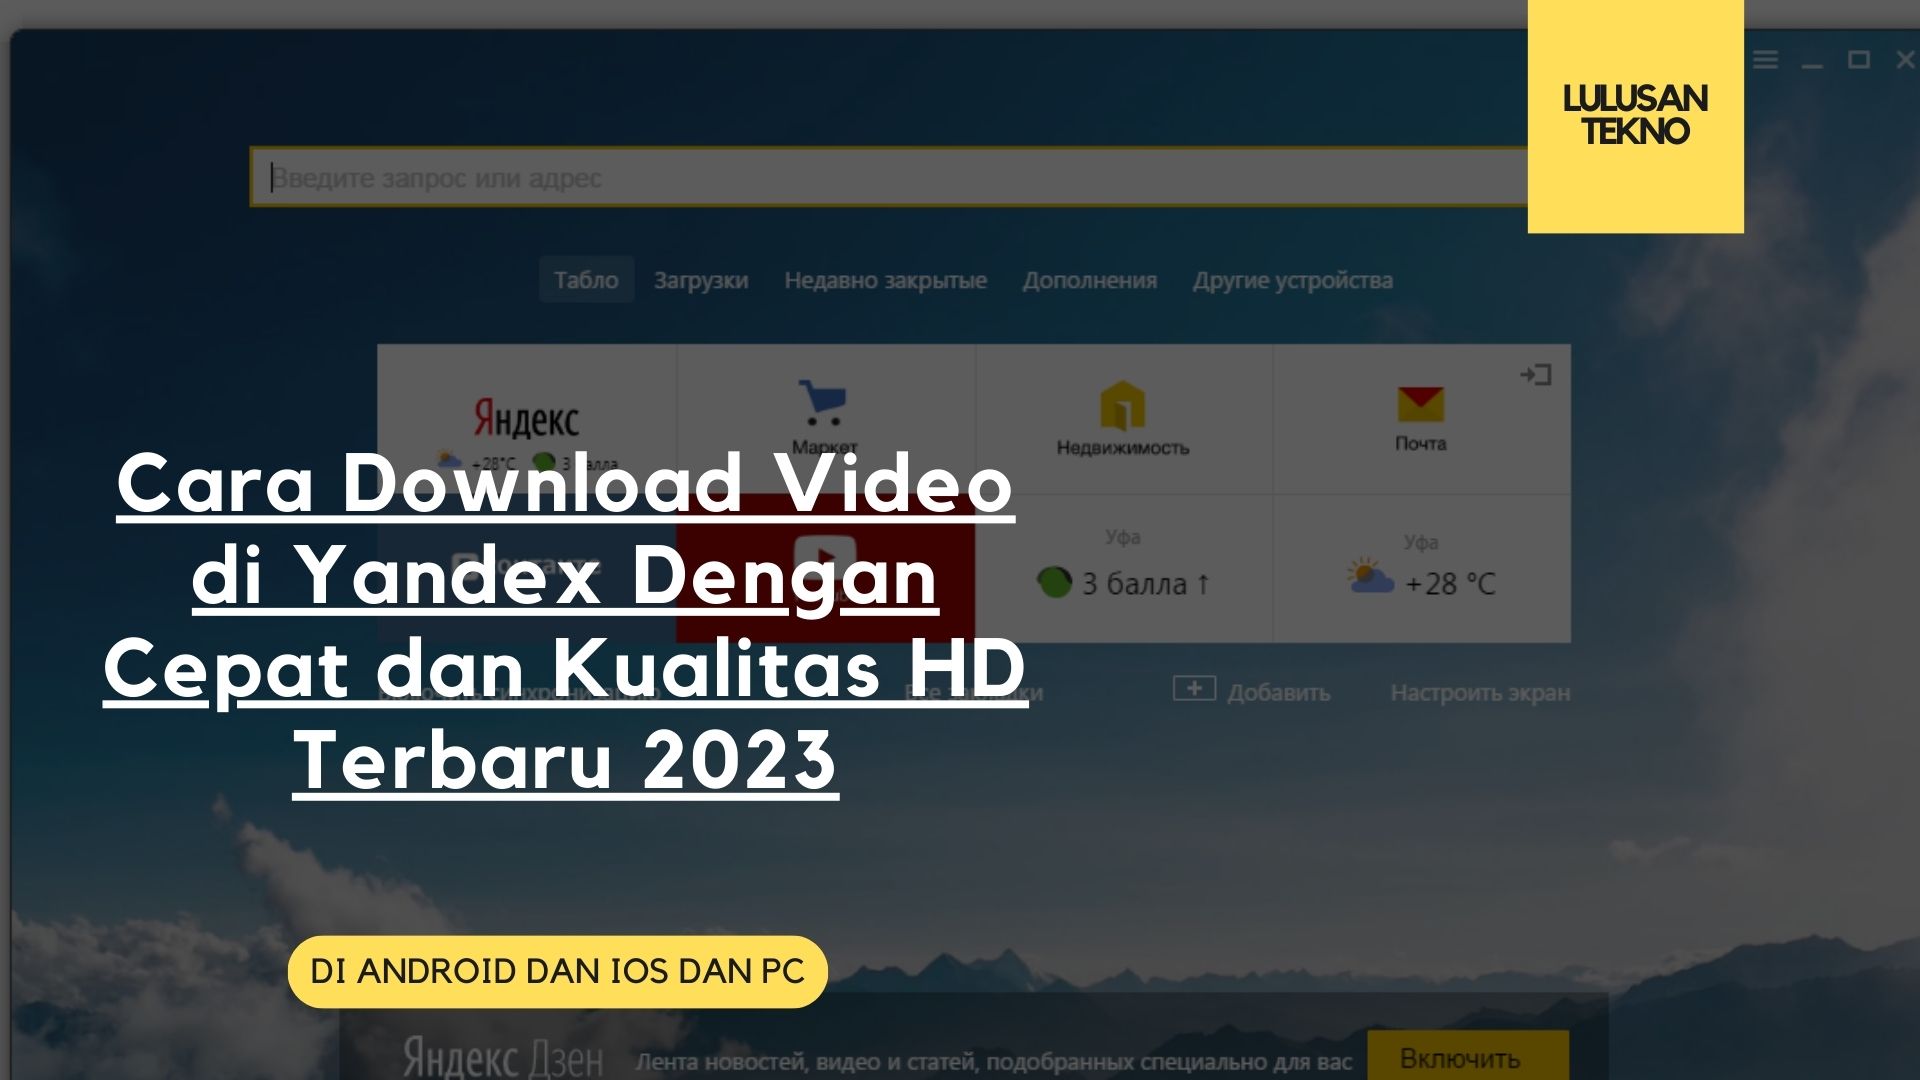 Cara Download Video di Yandex Dengan Cepat dan Kualitas HD Terbaru 2023